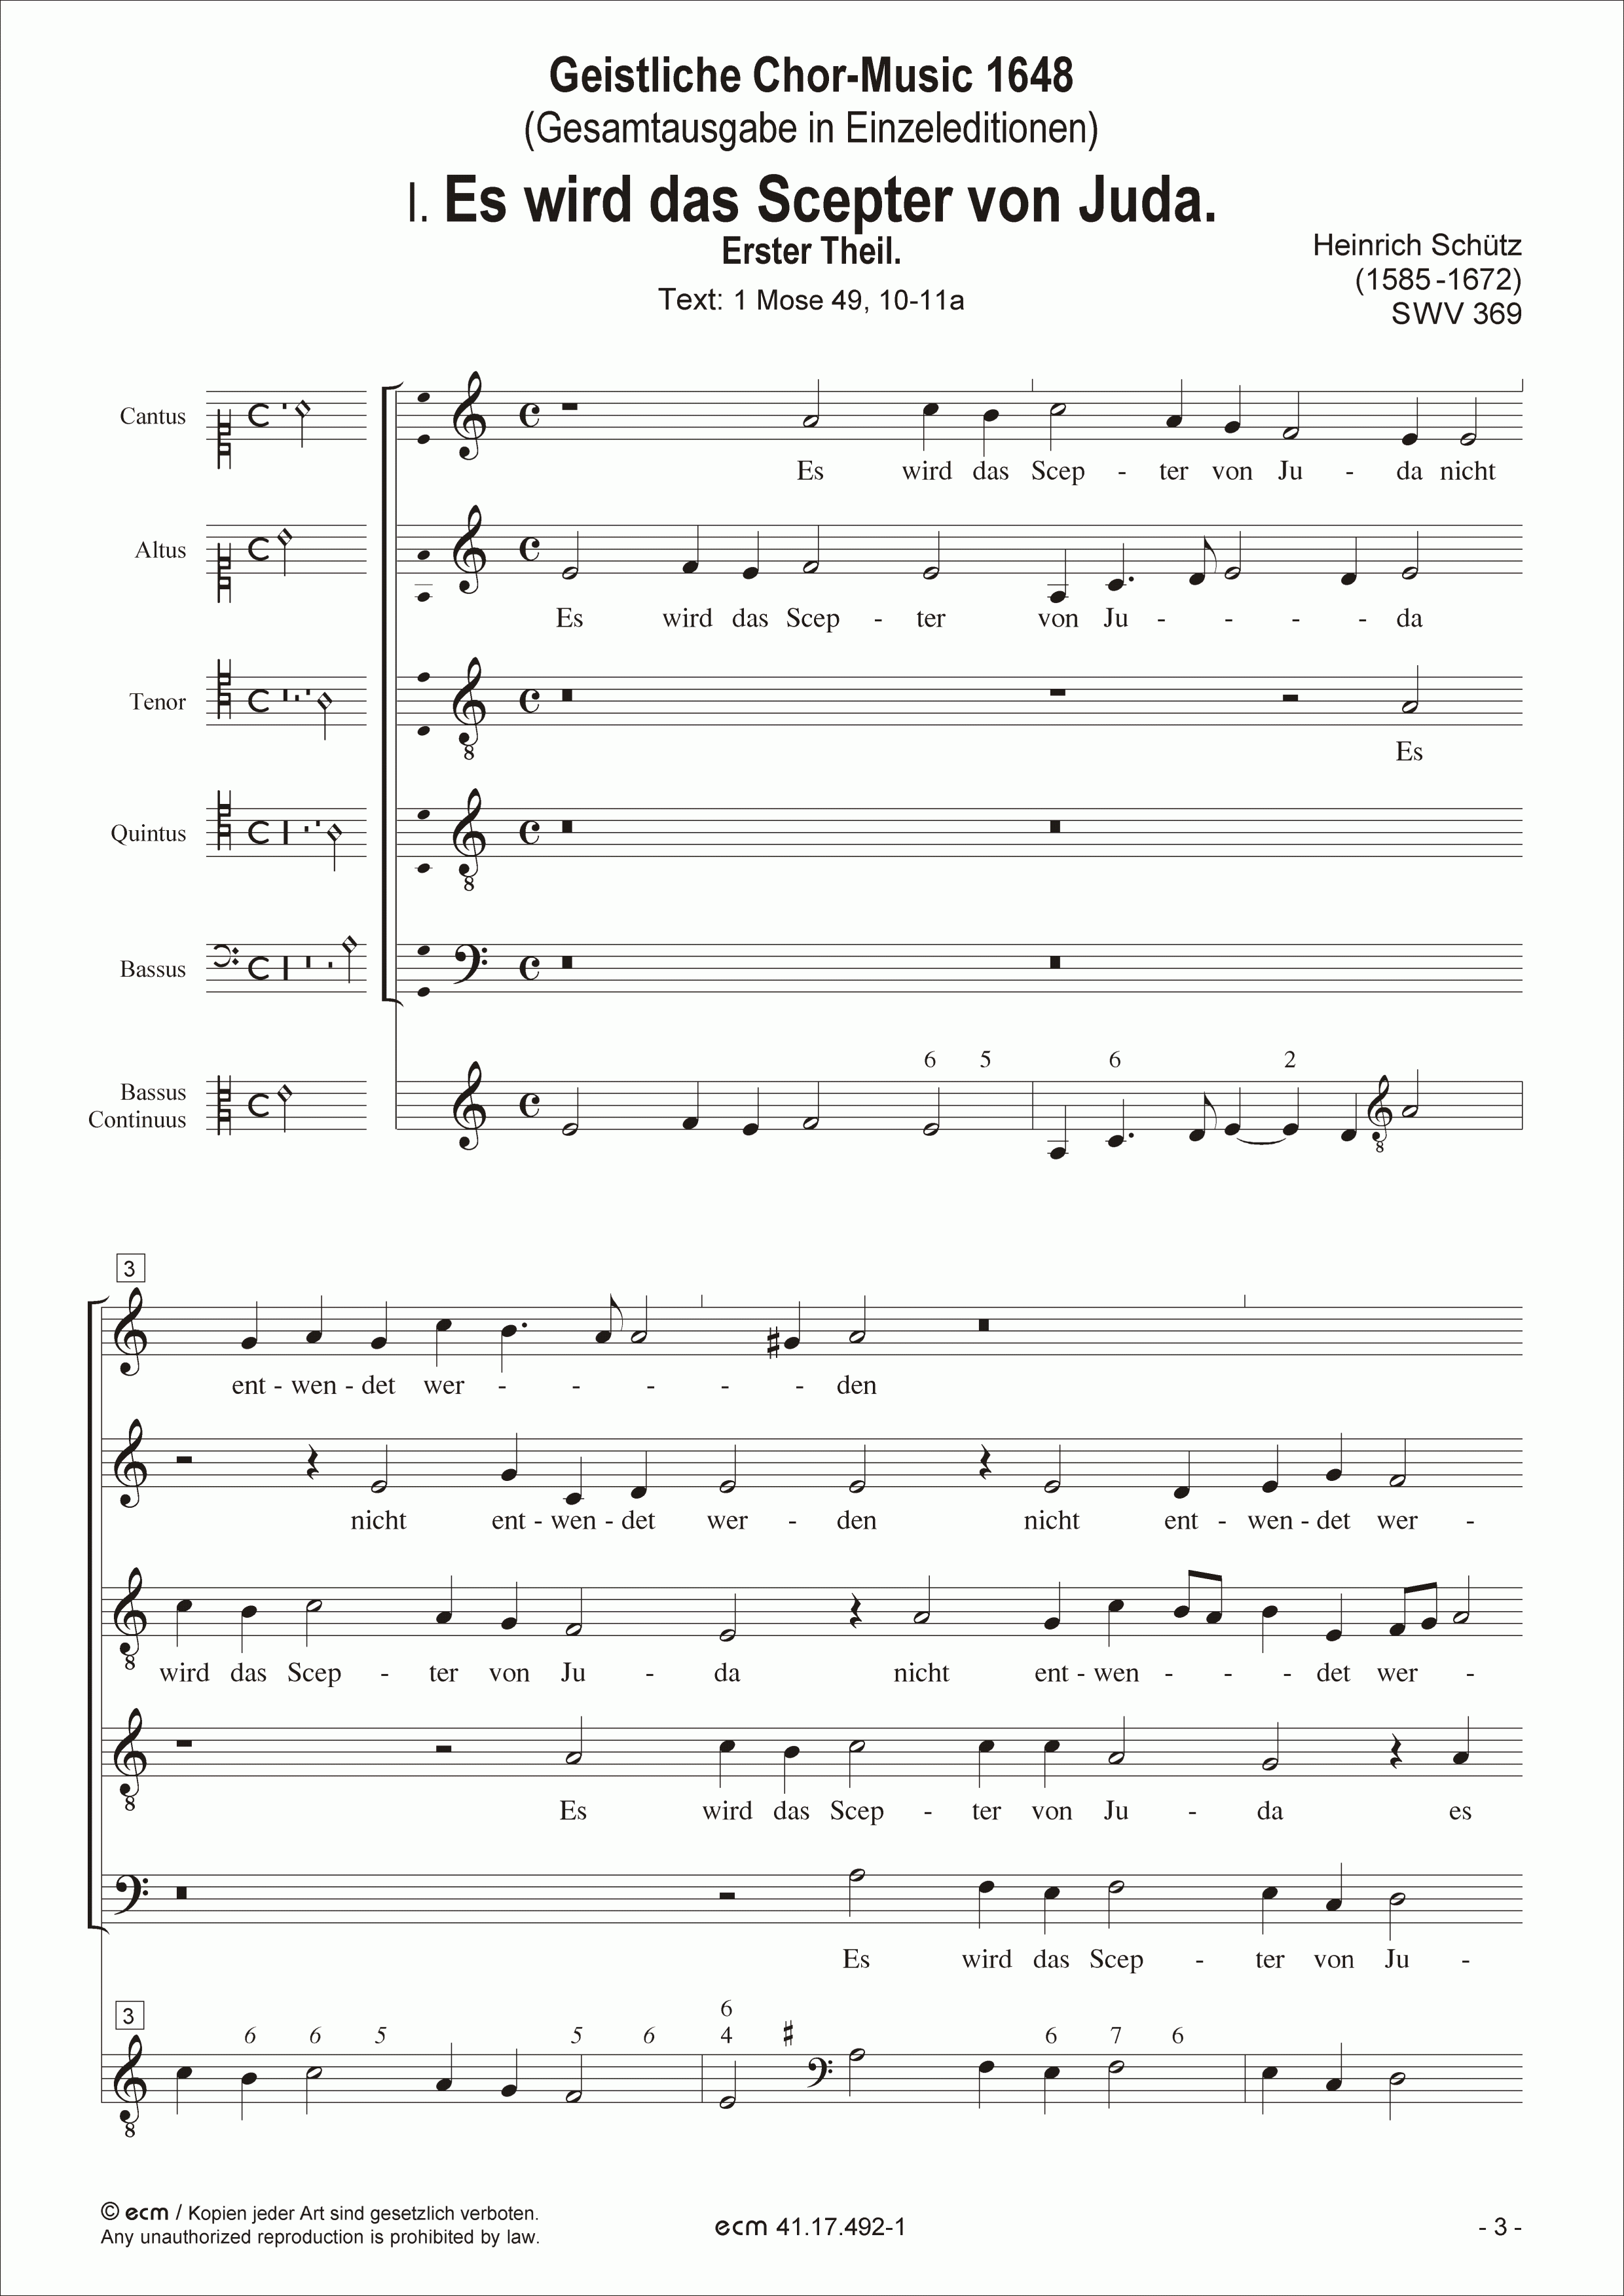 Geistliche Chor-Music 1648 (SWV 369-397)